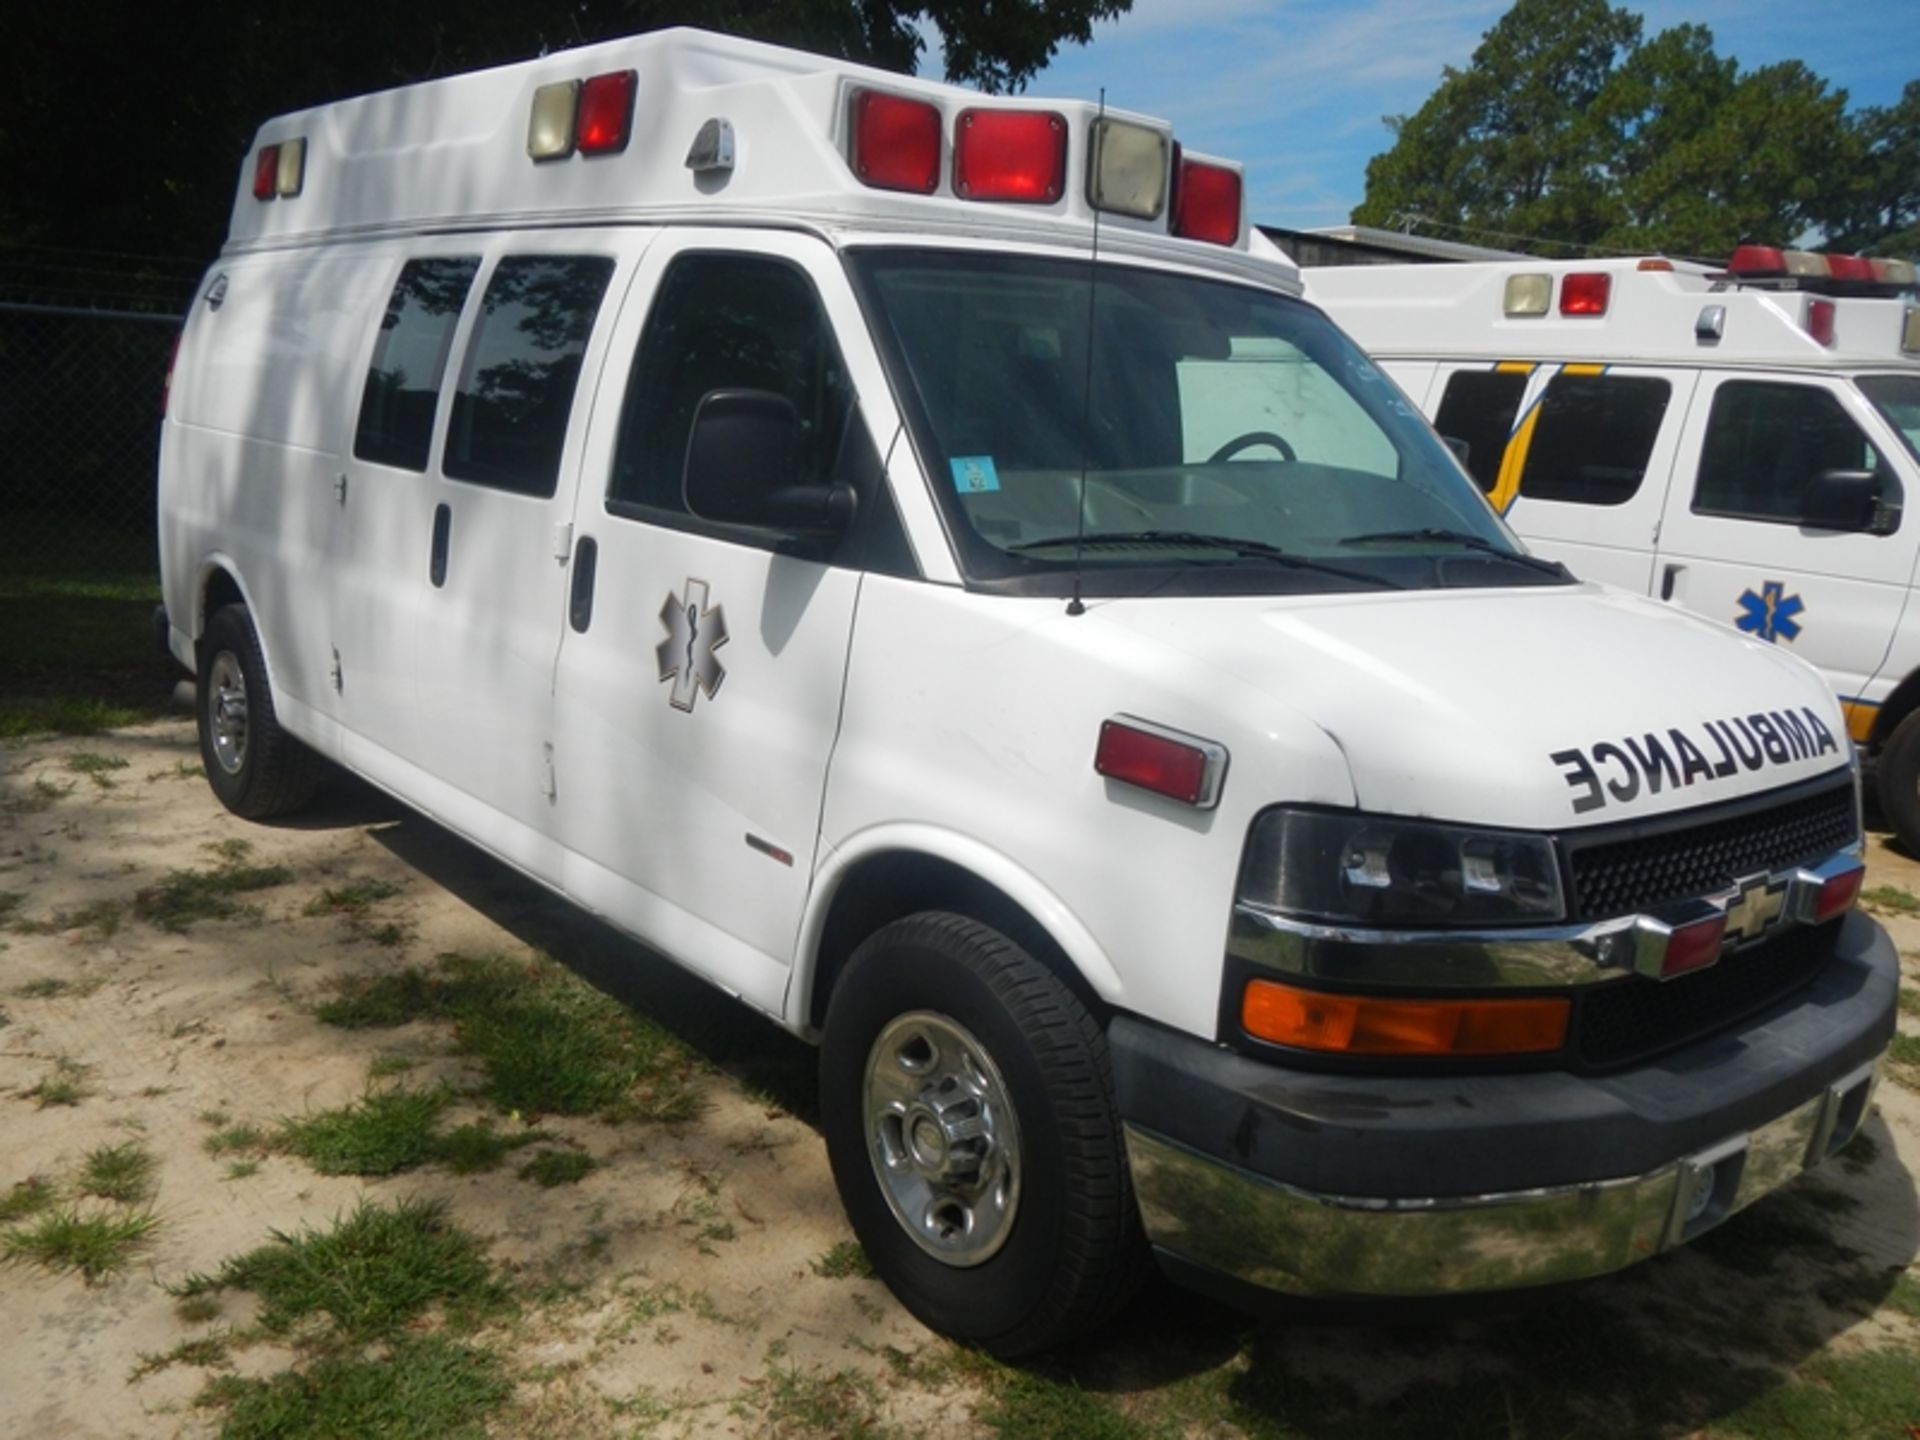 2009 CHEVROLET G-3500 Type II Ambulance 206,920 miles - 1GBHG396491168372 - Image 2 of 6